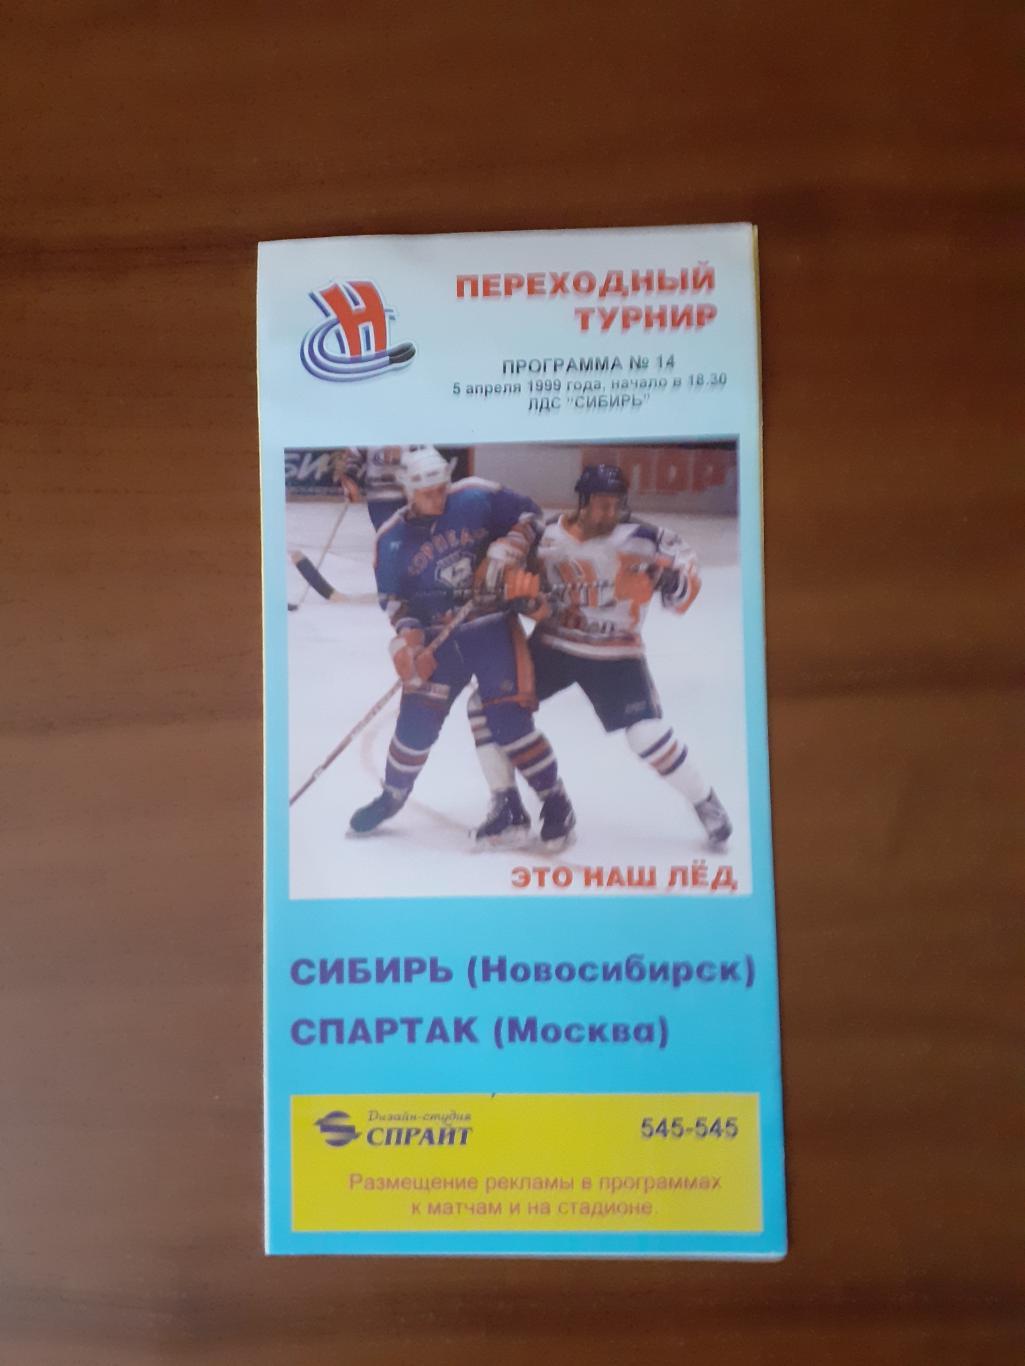 Сибирь Новосибирск - Спартак Москва - 5 апреля 1999г.